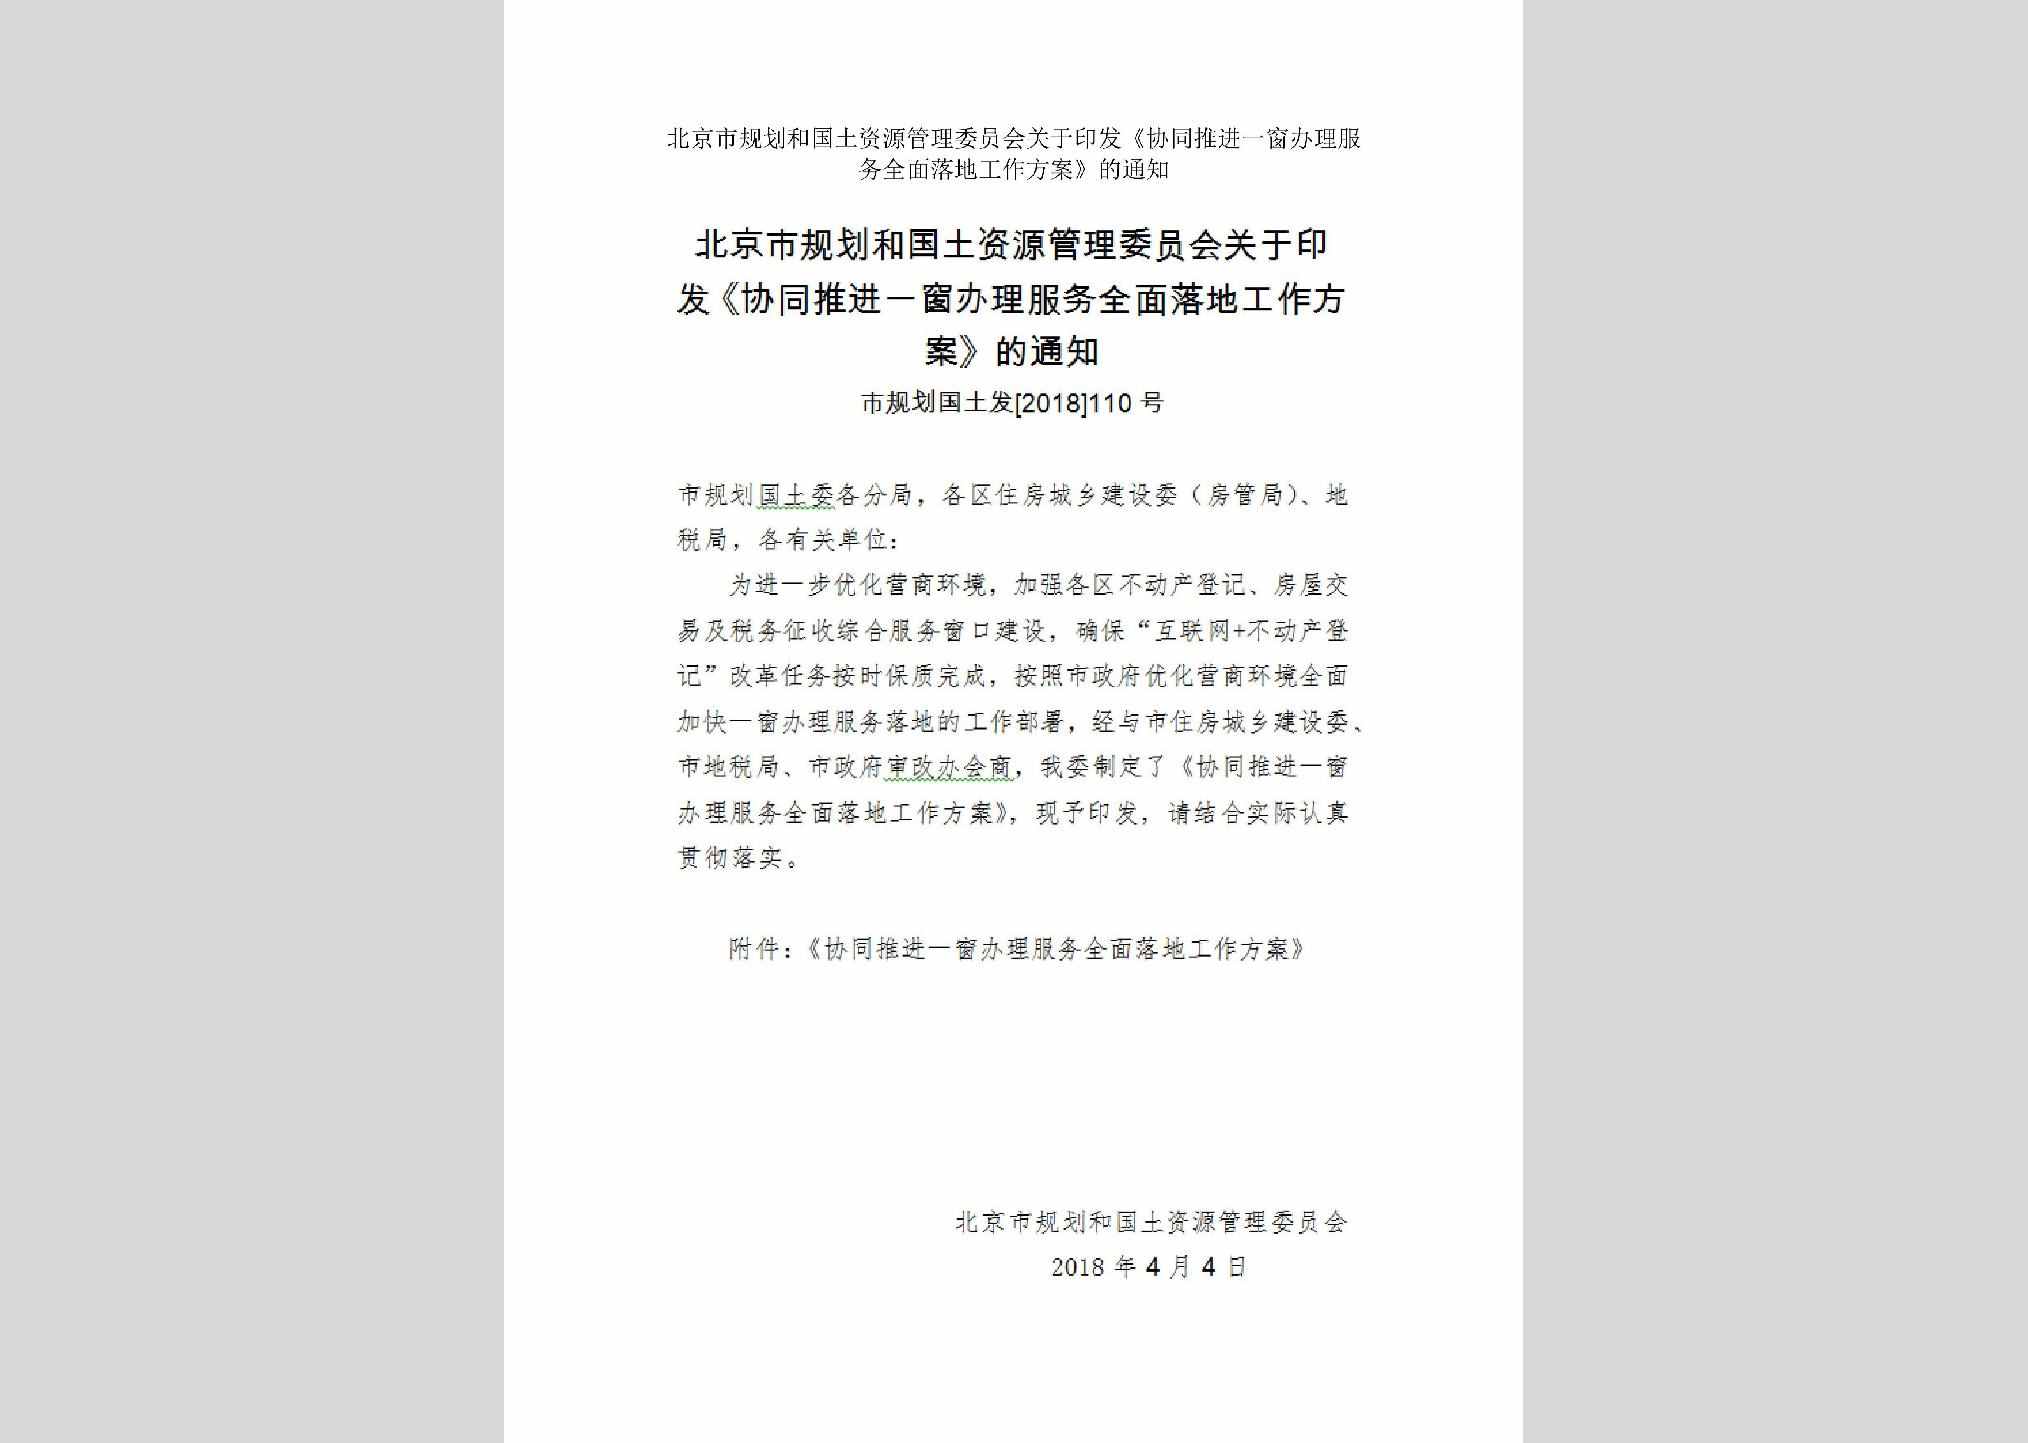 市规划国土发[2018]110号：北京市规划和国土资源管理委员会关于印发《协同推进一窗办理服务全面落地工作方案》的通知